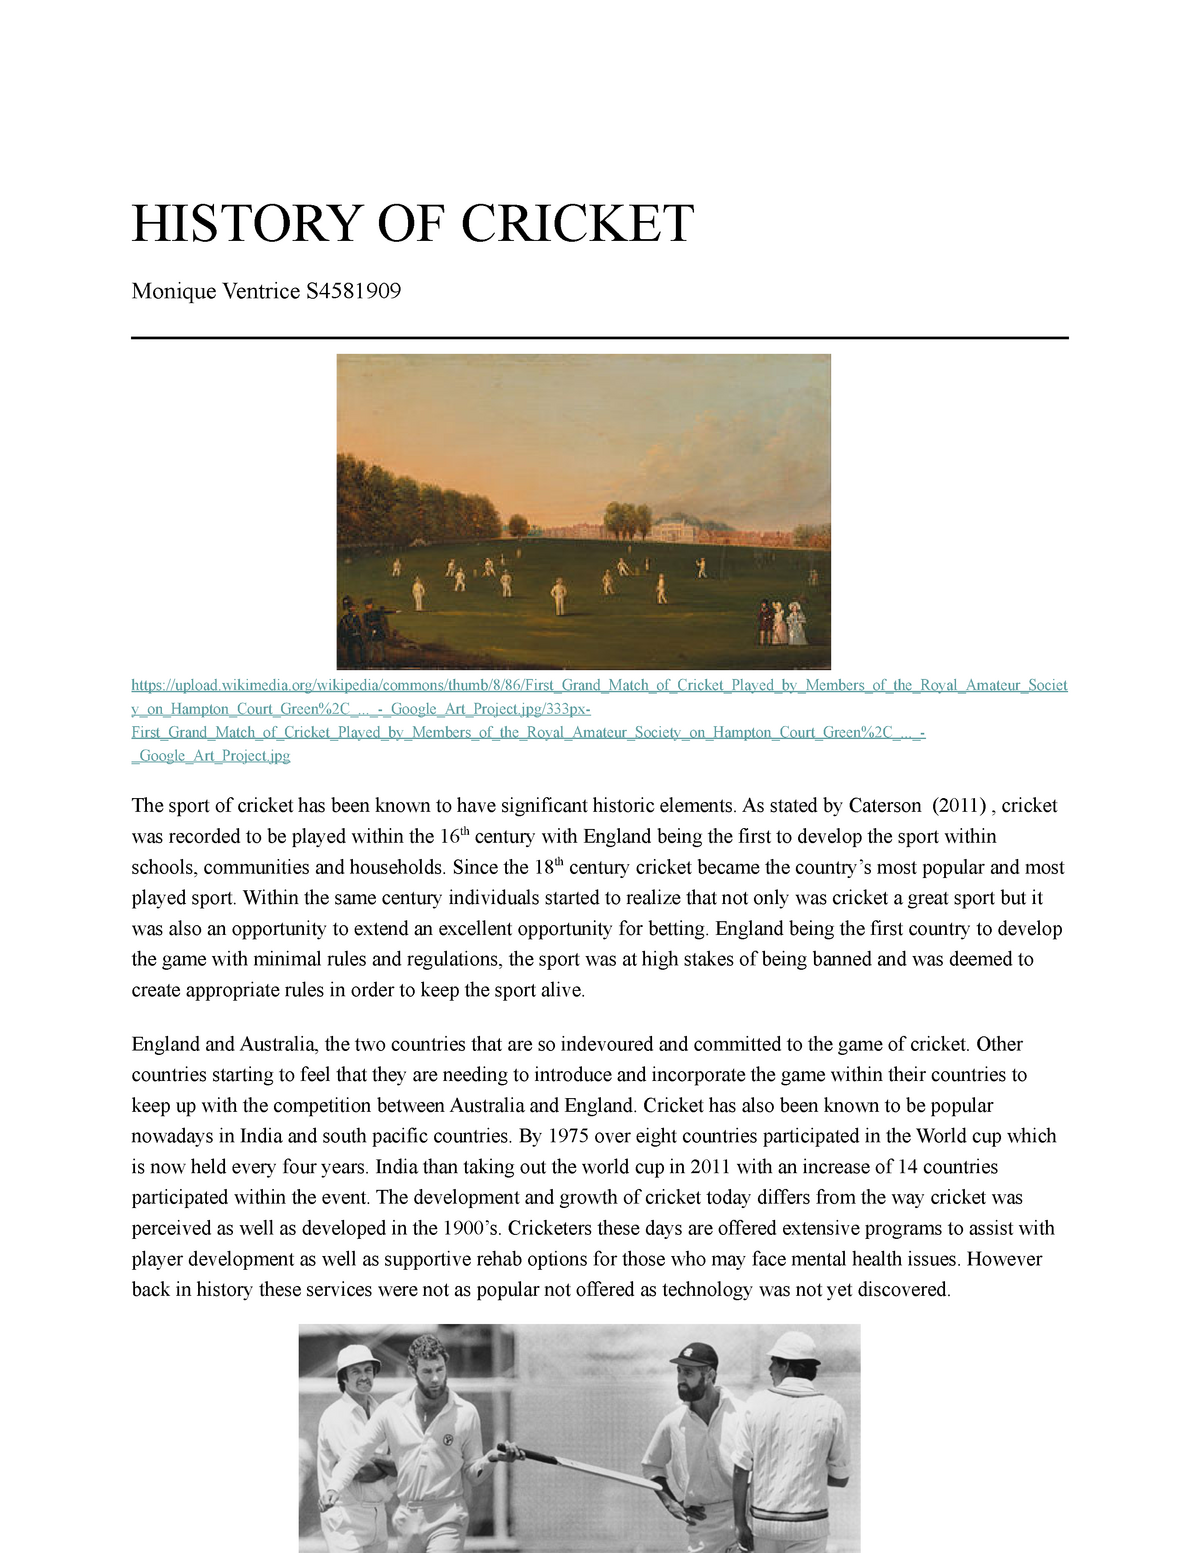 history of cricket essay